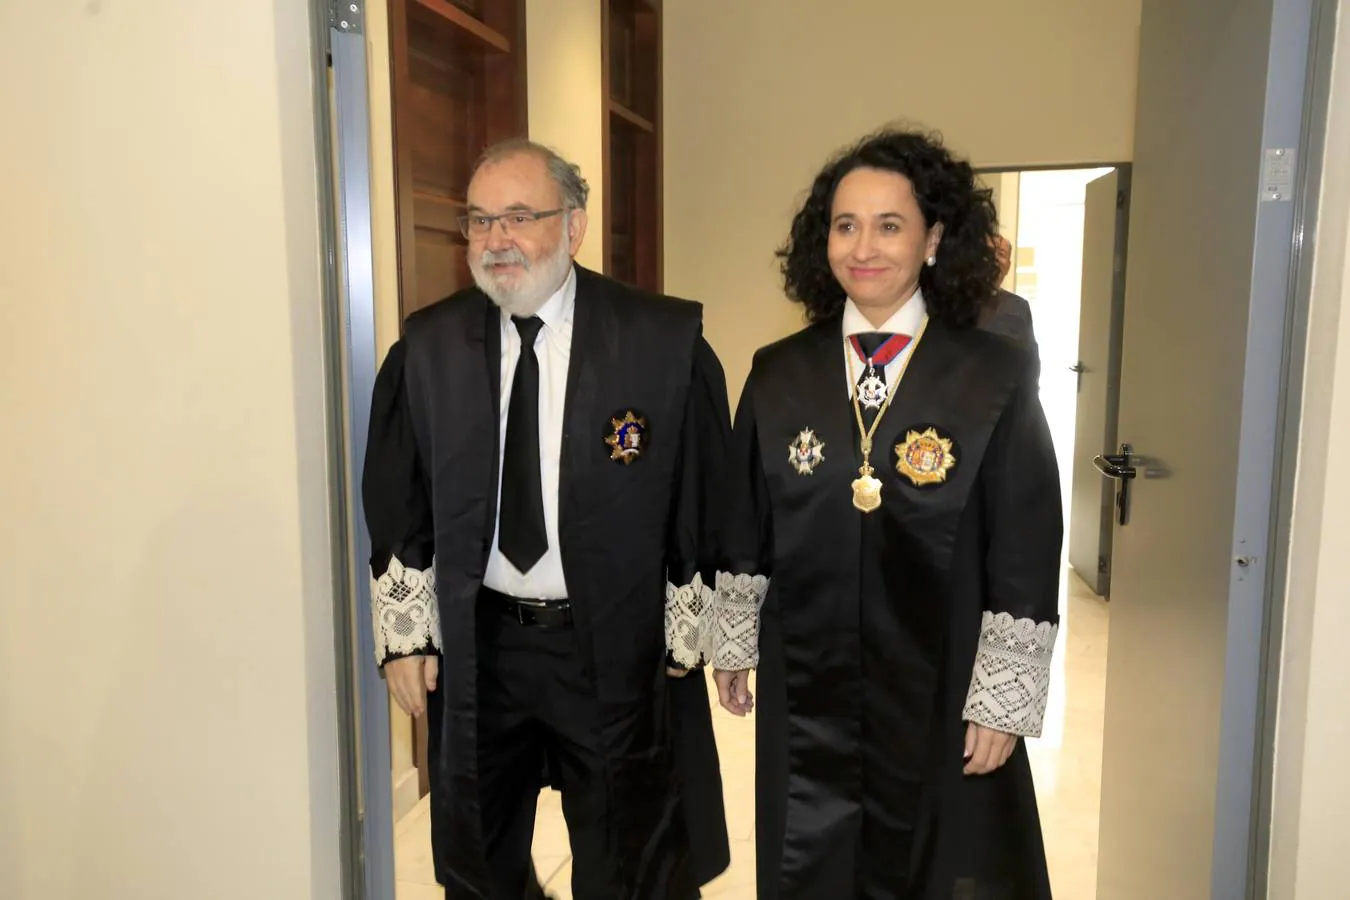 La nueva presidenta del TSJ, María Félix Tena, asume el cargo y anuncia una justicia más cercana